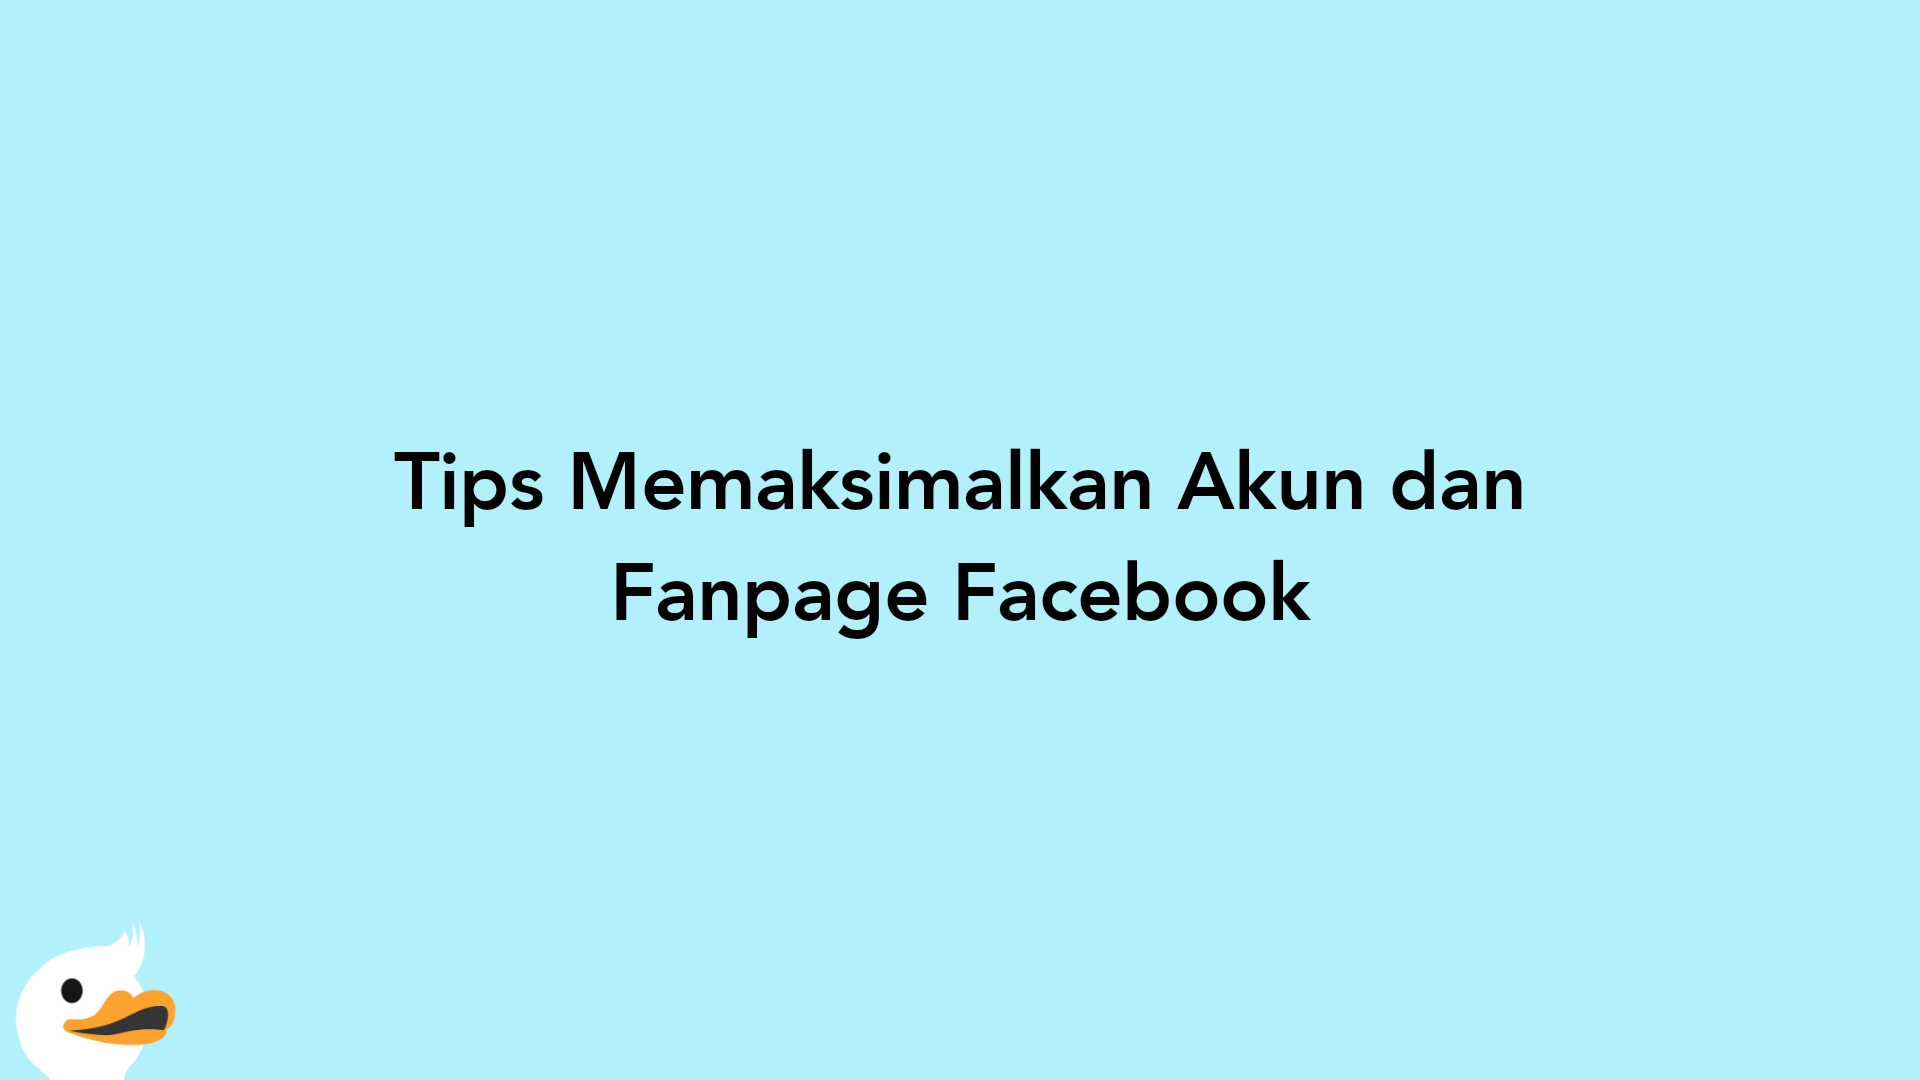 Tips Memaksimalkan Akun dan Fanpage Facebook